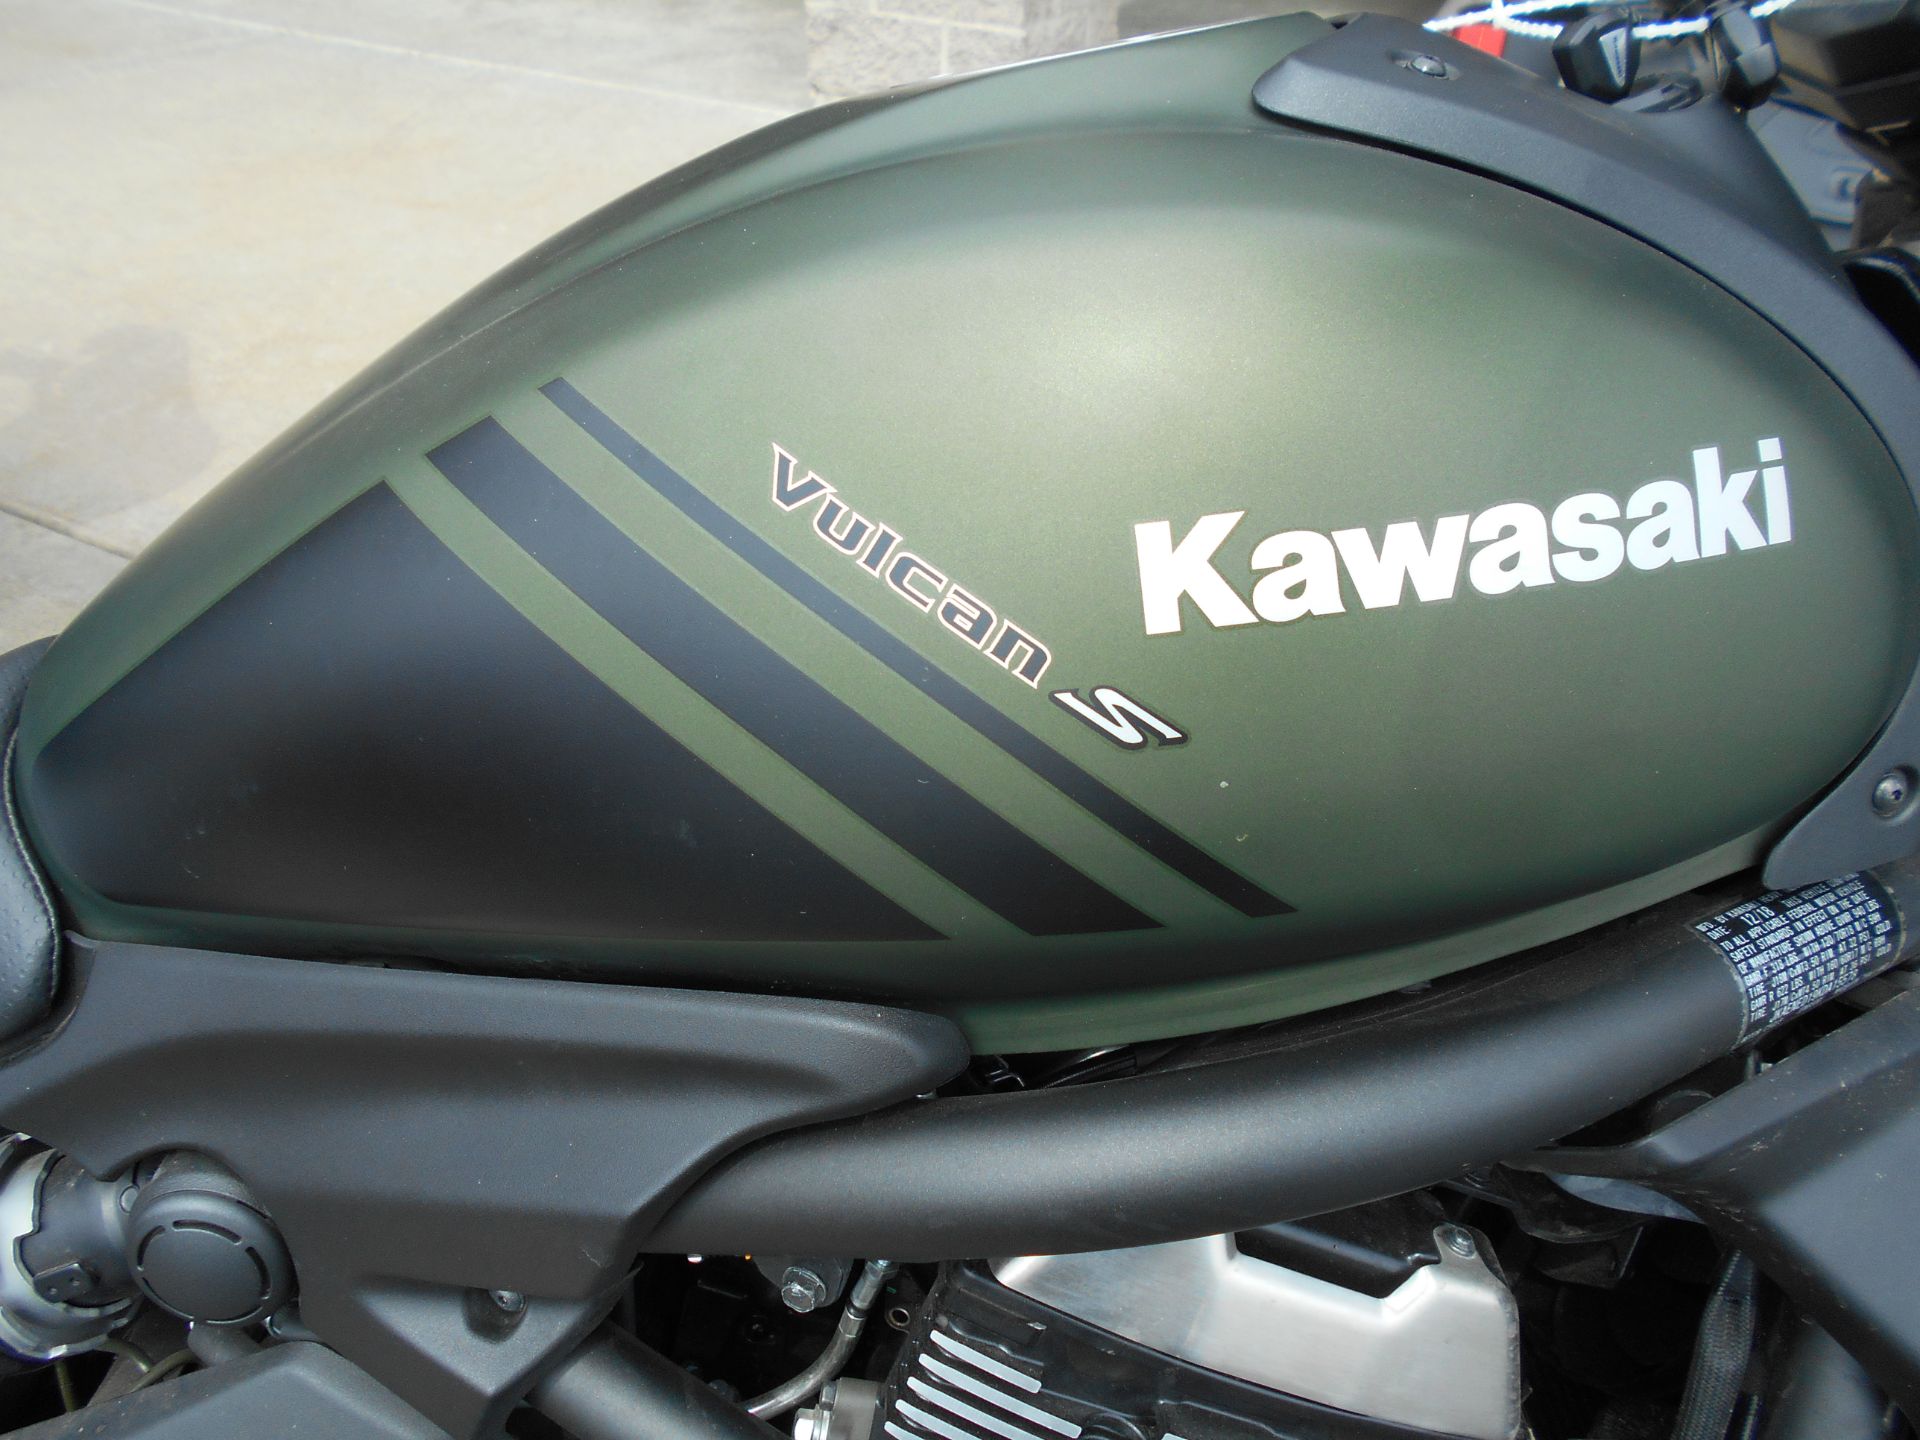 2019 Kawasaki Vulcan S ABS in Mauston, Wisconsin - Photo 2